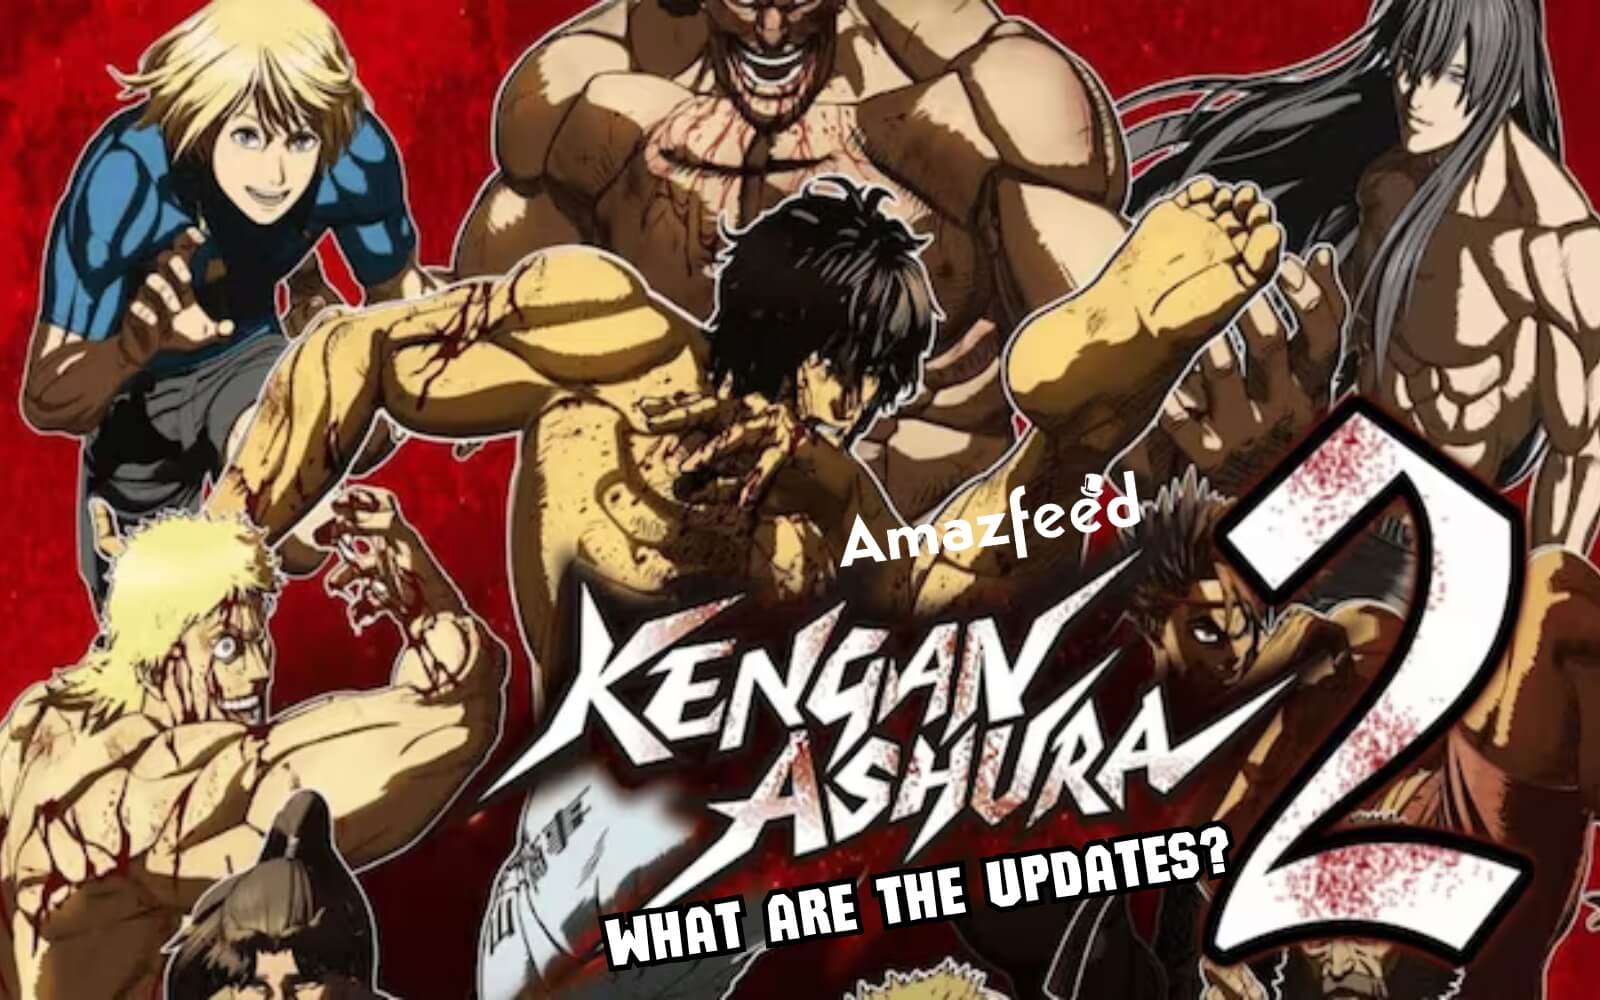 Kengan Ashura Season 2 Part 2 premieres in 2024, fans await